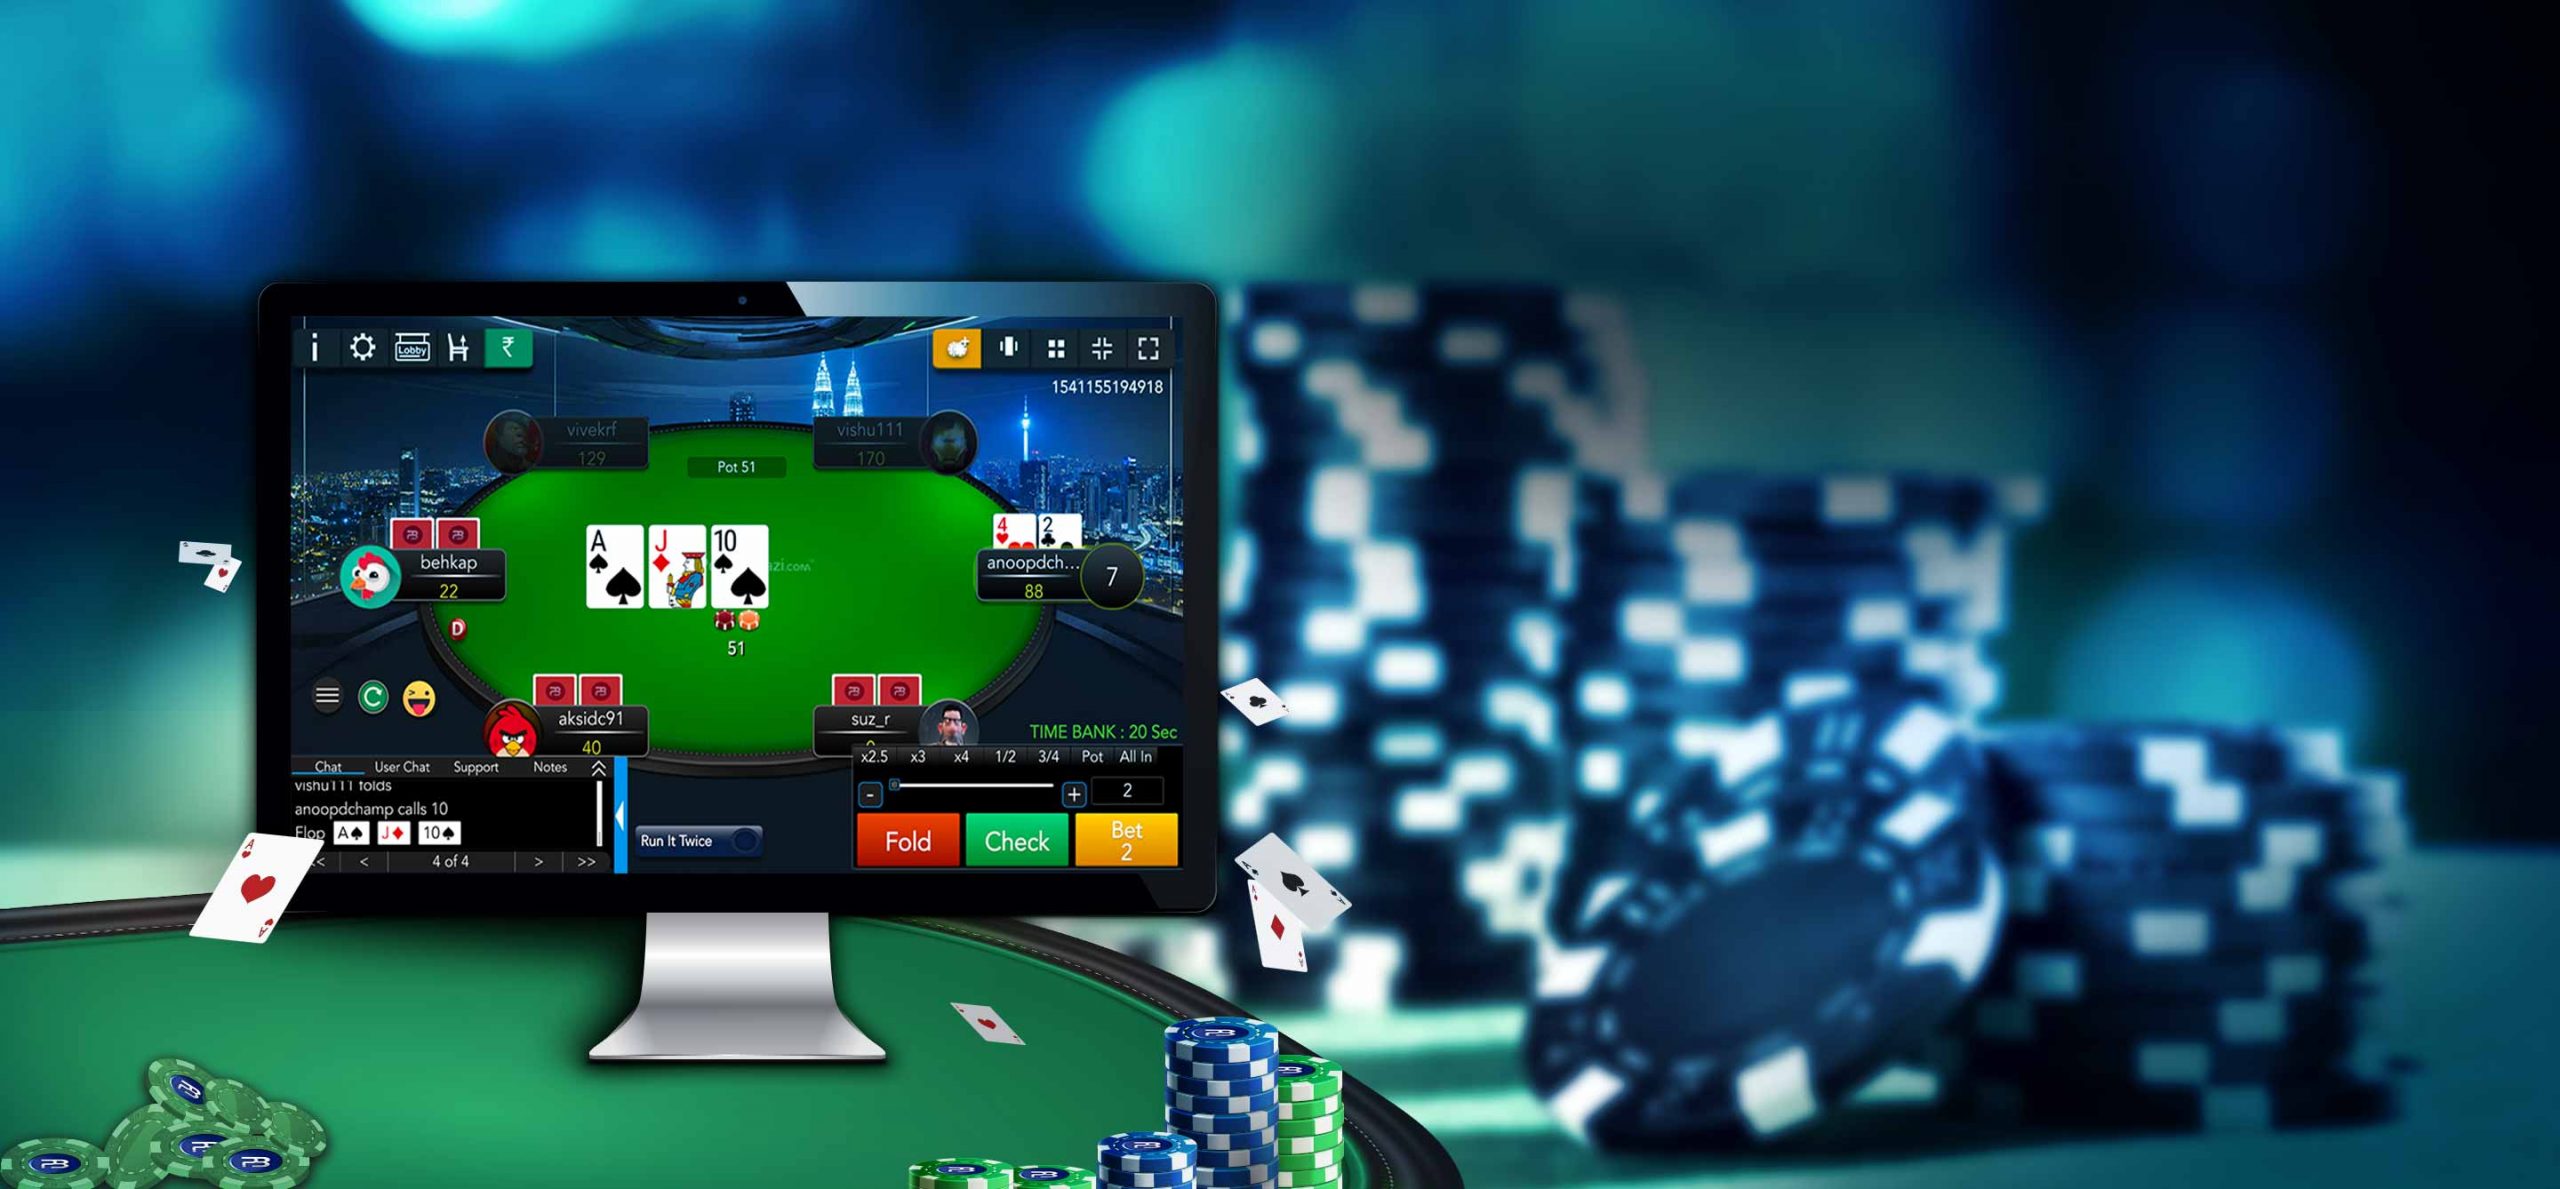 Cara kerja Perangkat Lunak Program Situs Poker Online